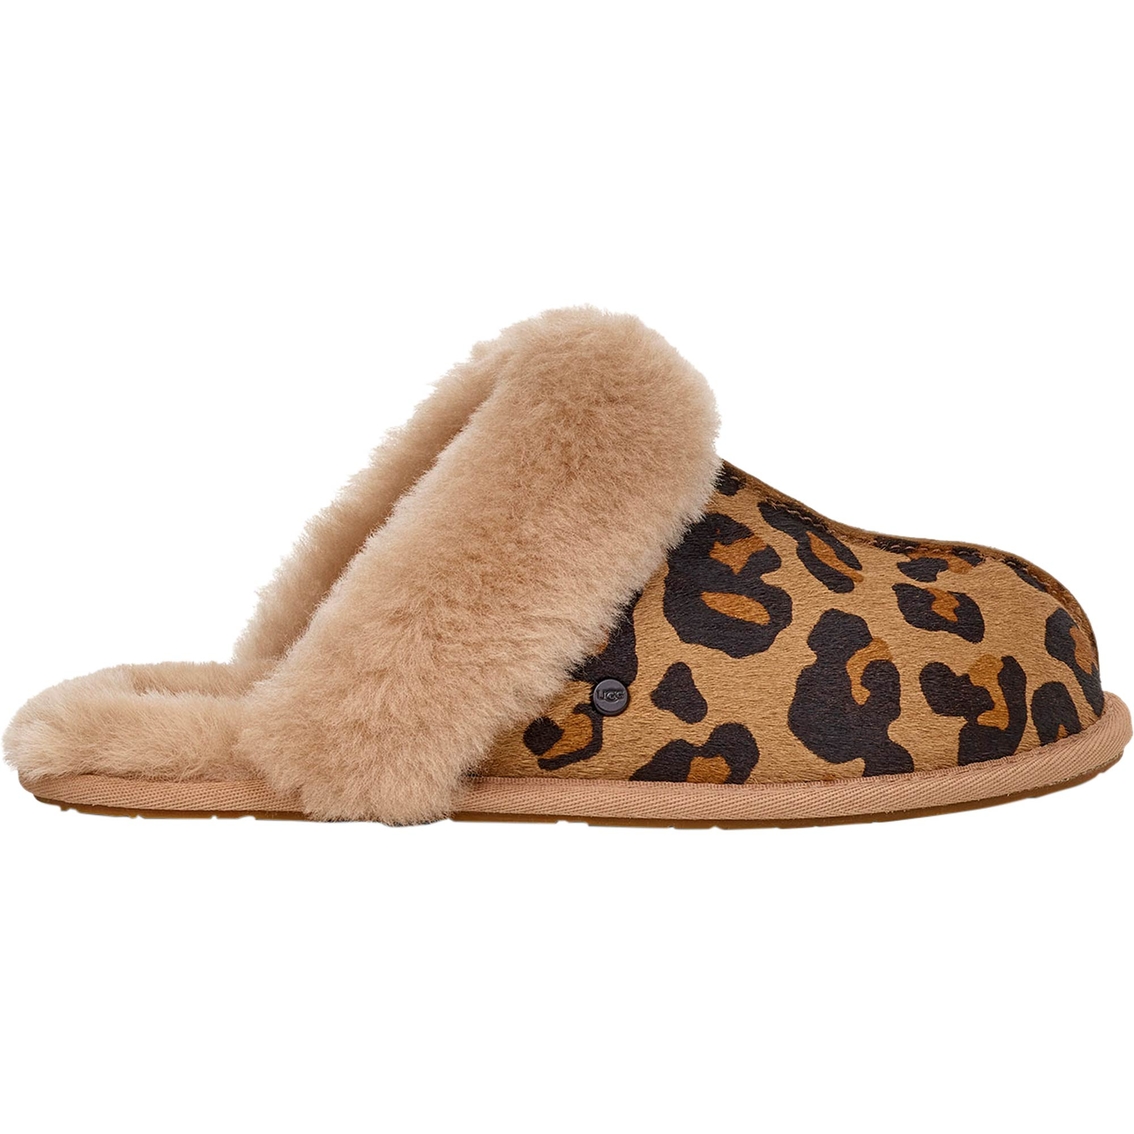 Hold sammen med Abundantly lejlighed Ugg Scufette Leopard Slippers | Slippers | Shoes | Shop The Exchange